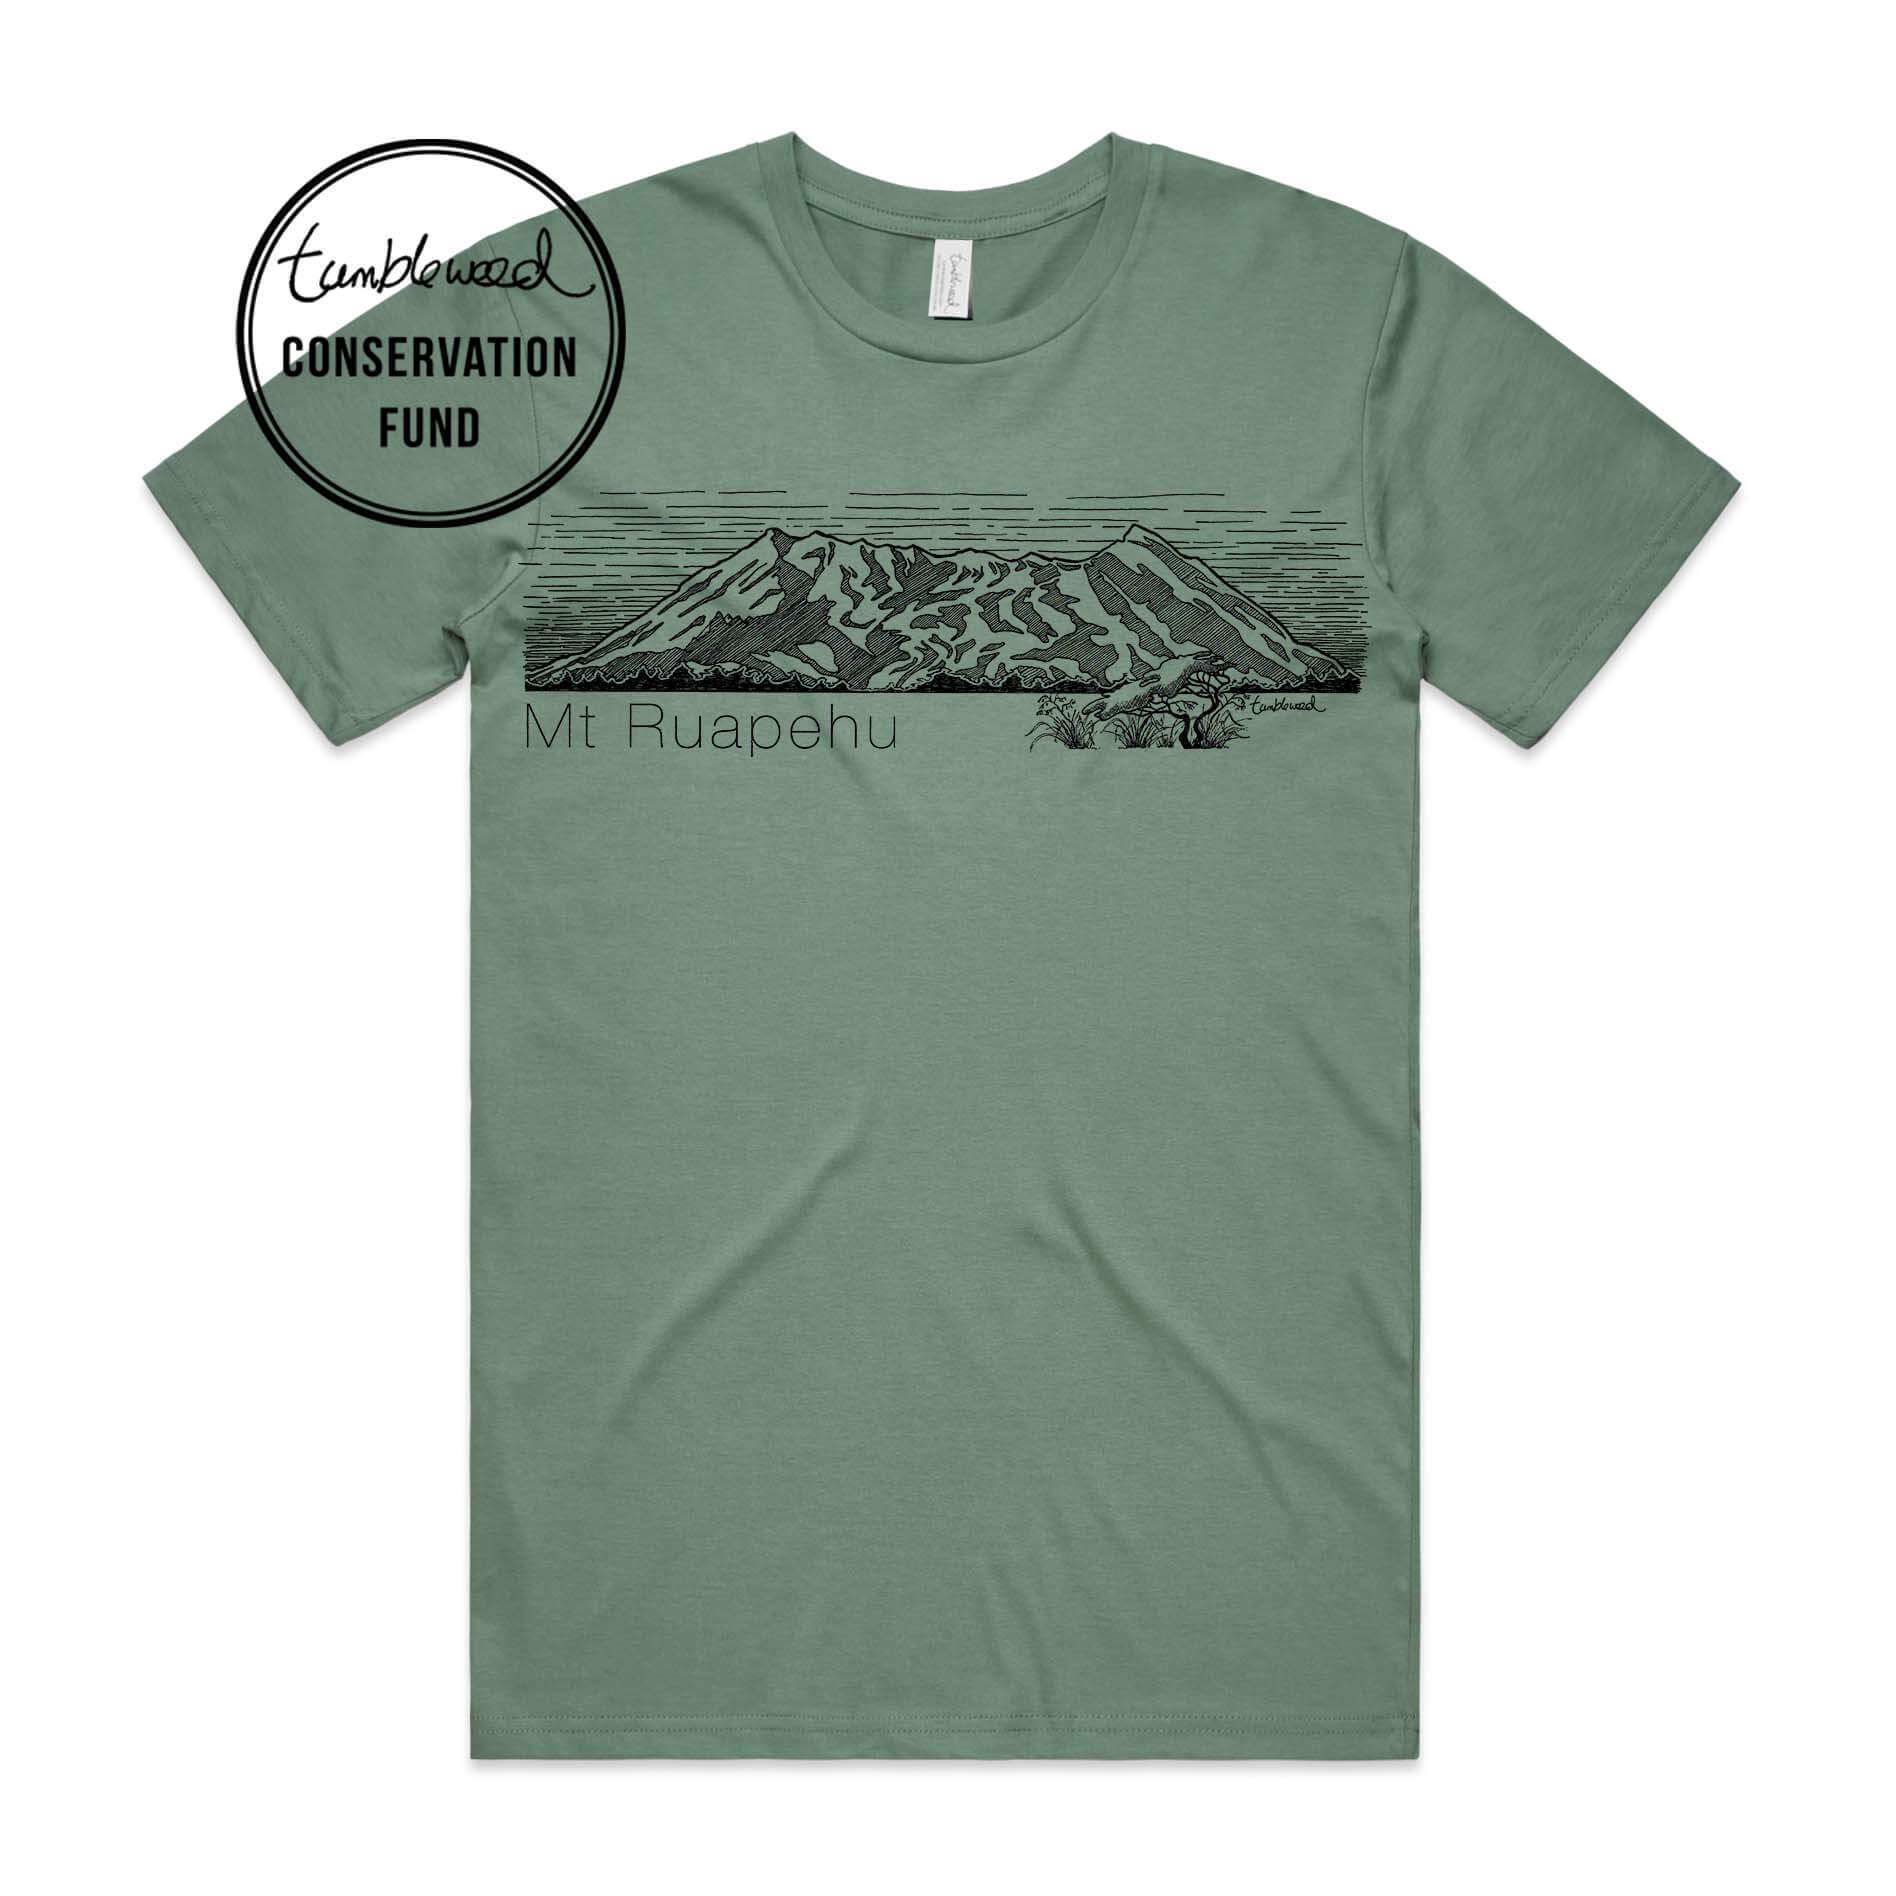 Sage, female t-shirt featuring a screen printed Mt Ruapehu design.